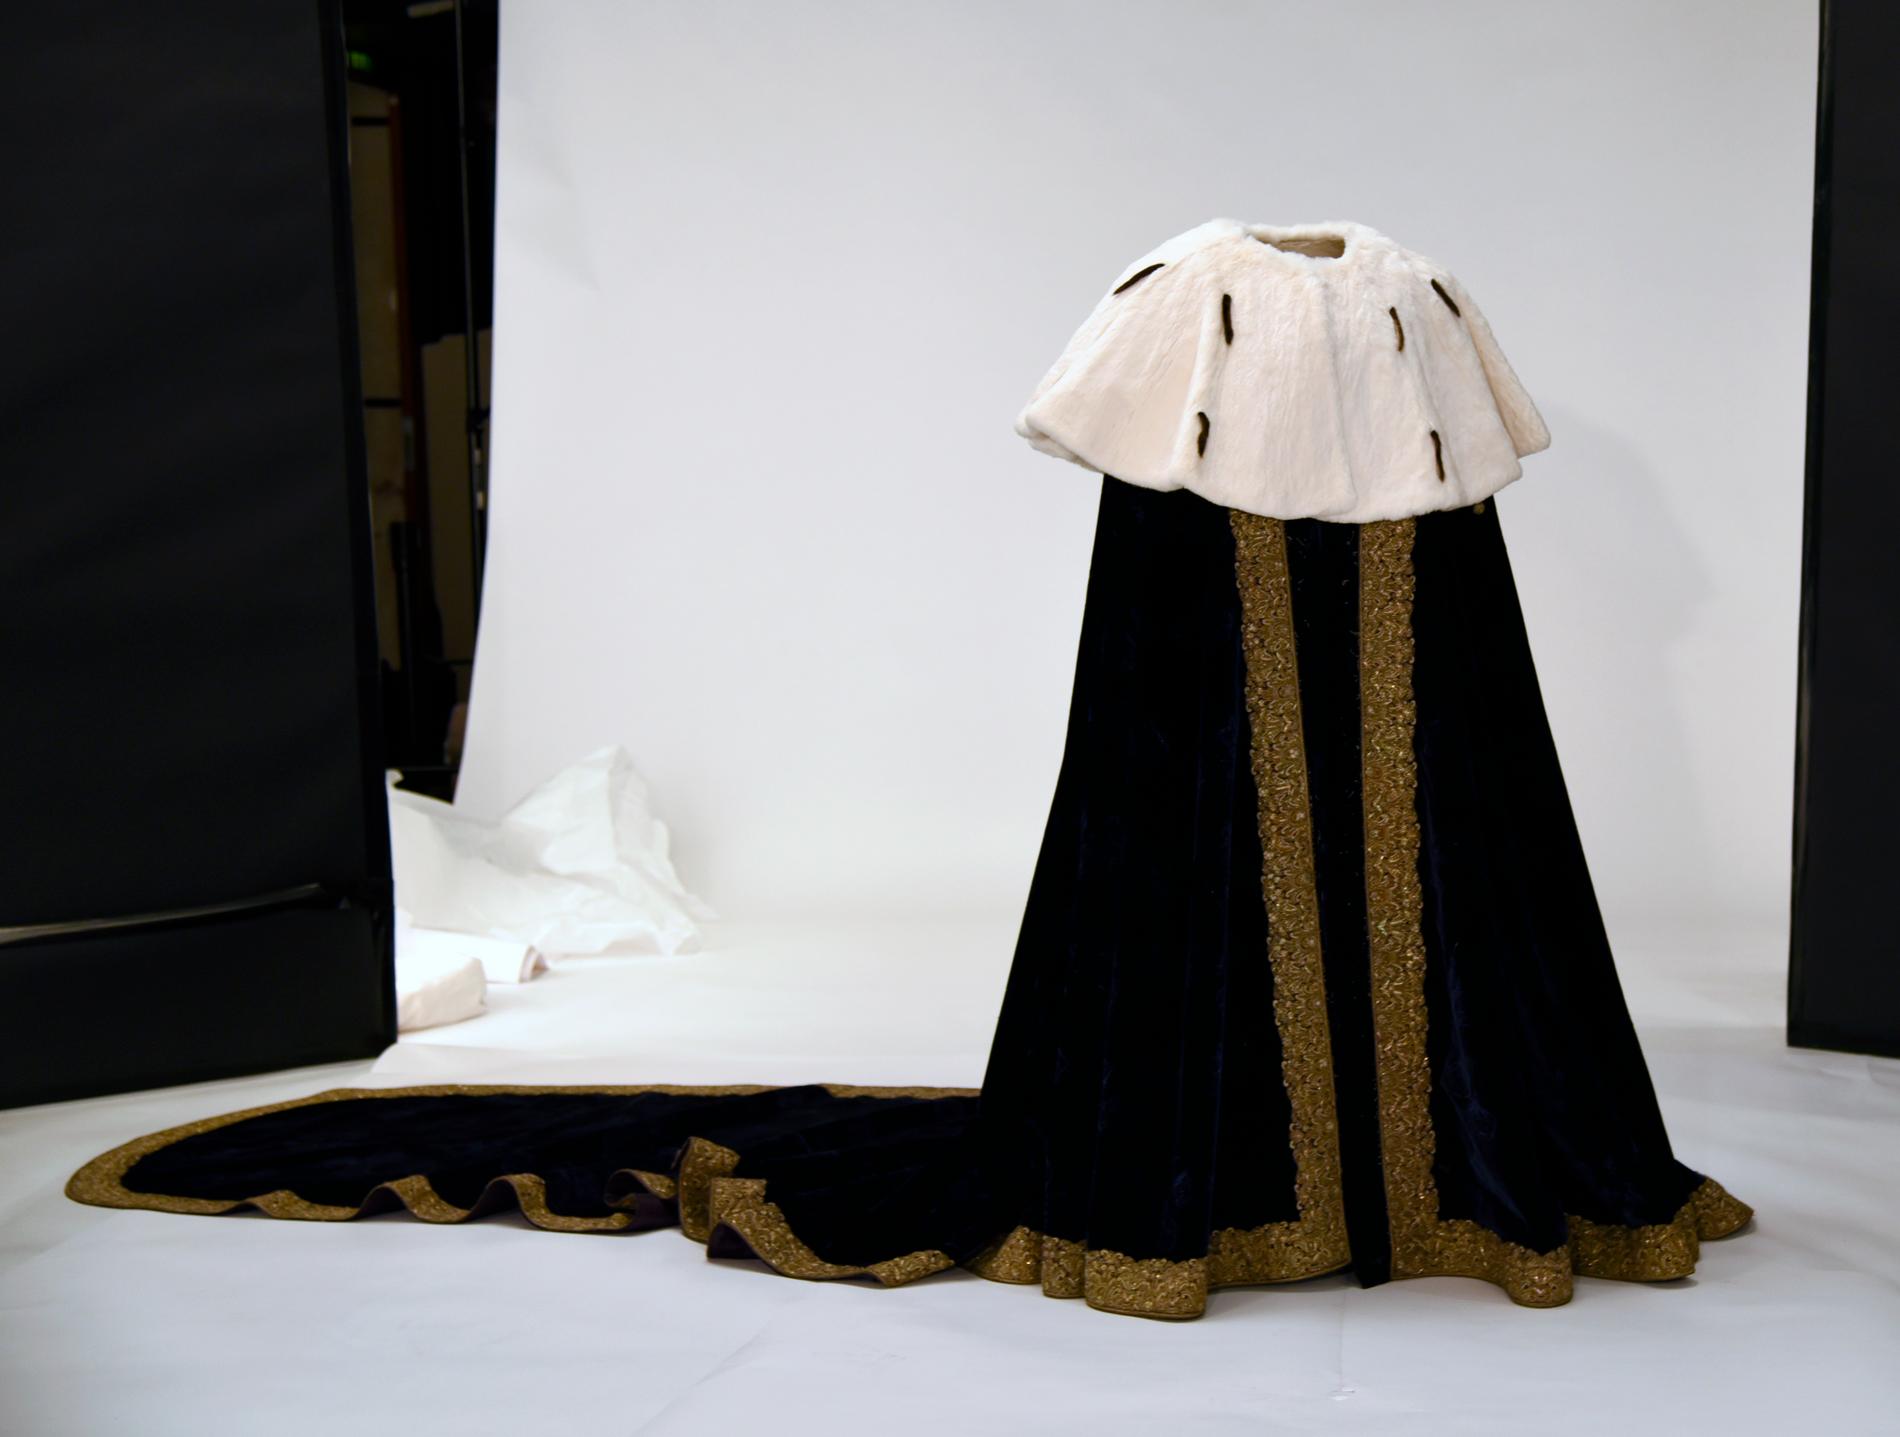 Drottning Kristinas kröningsmantel från 1650 står uppställd för att fotograferas innan den placeras i sin utställningsmonter.